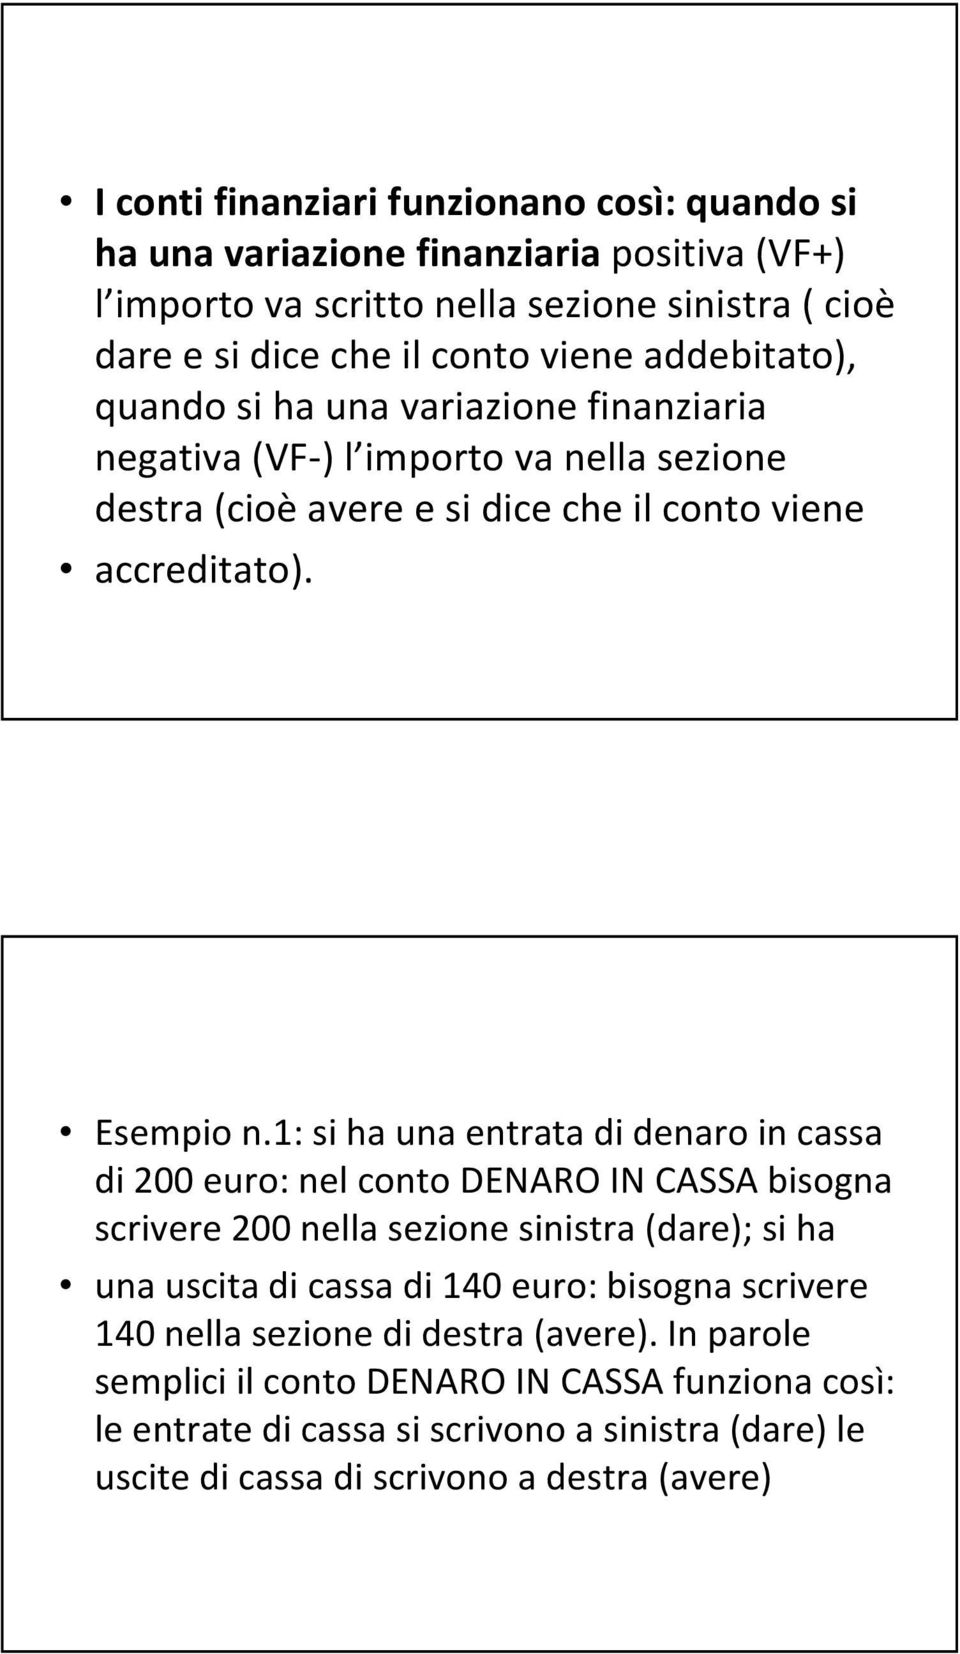 1: si ha una entrata di denaro in cassa di 200 euro: nel conto DENARO IN CASSA bisogna scrivere 200 nella sezione sinistra (dare); si ha una uscita di cassa di 140 euro: bisogna